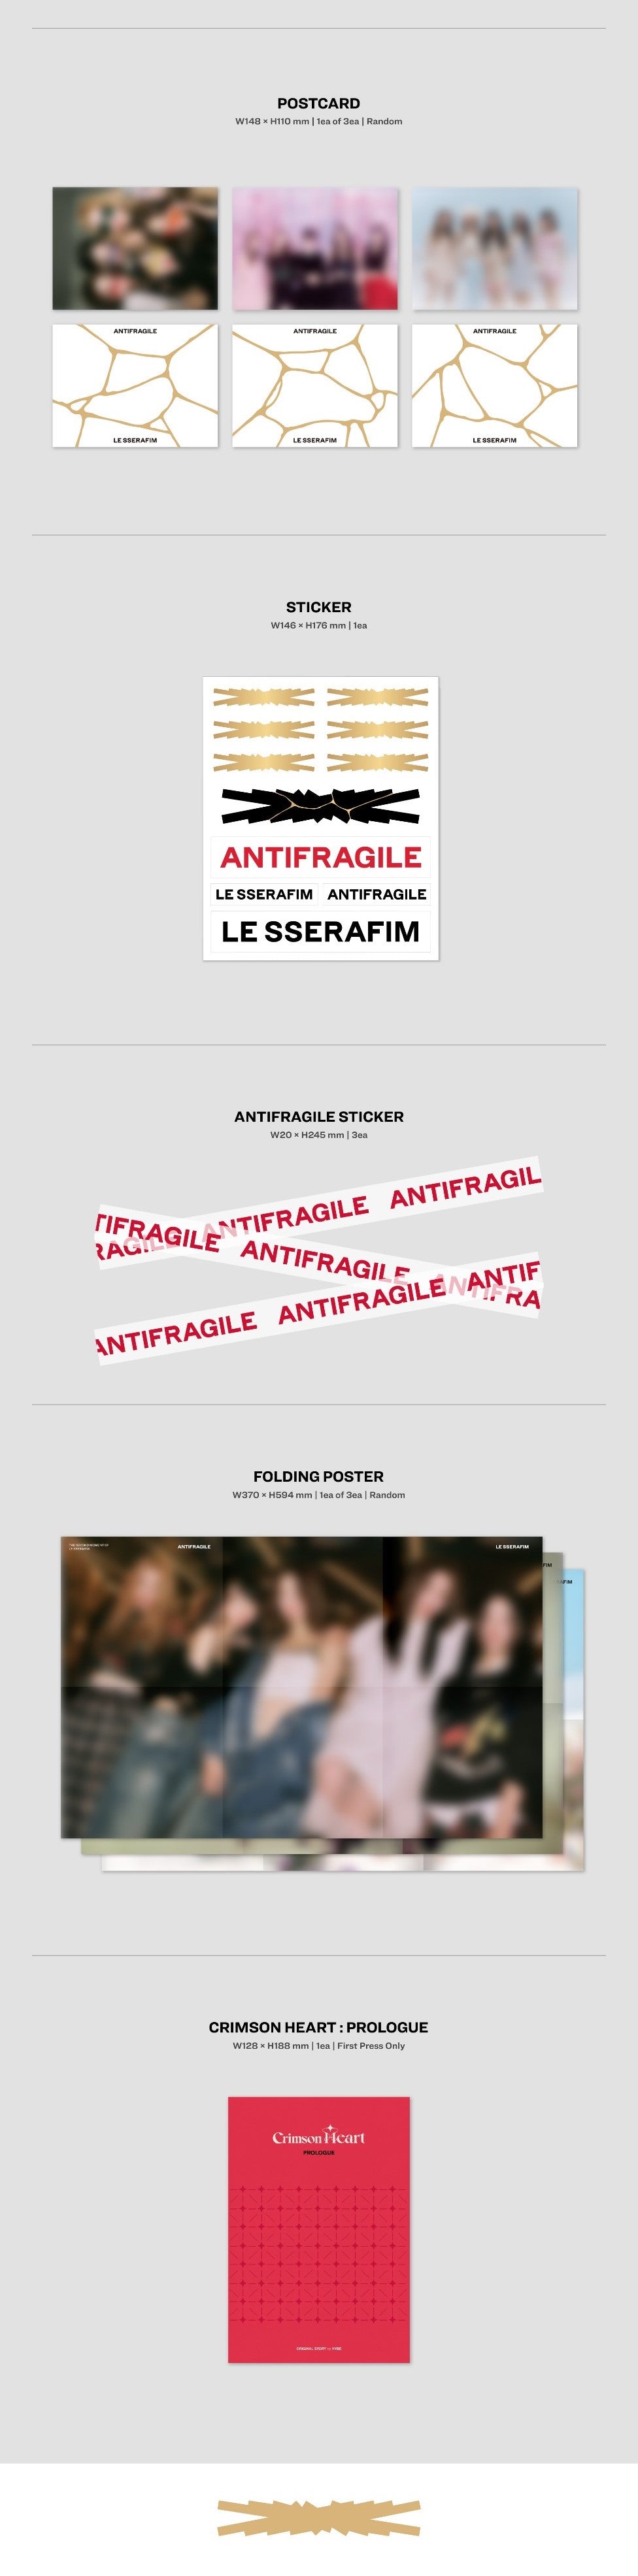 K-Pop CD Le Sserafim - 2nd Mini Album 'Antifragile'